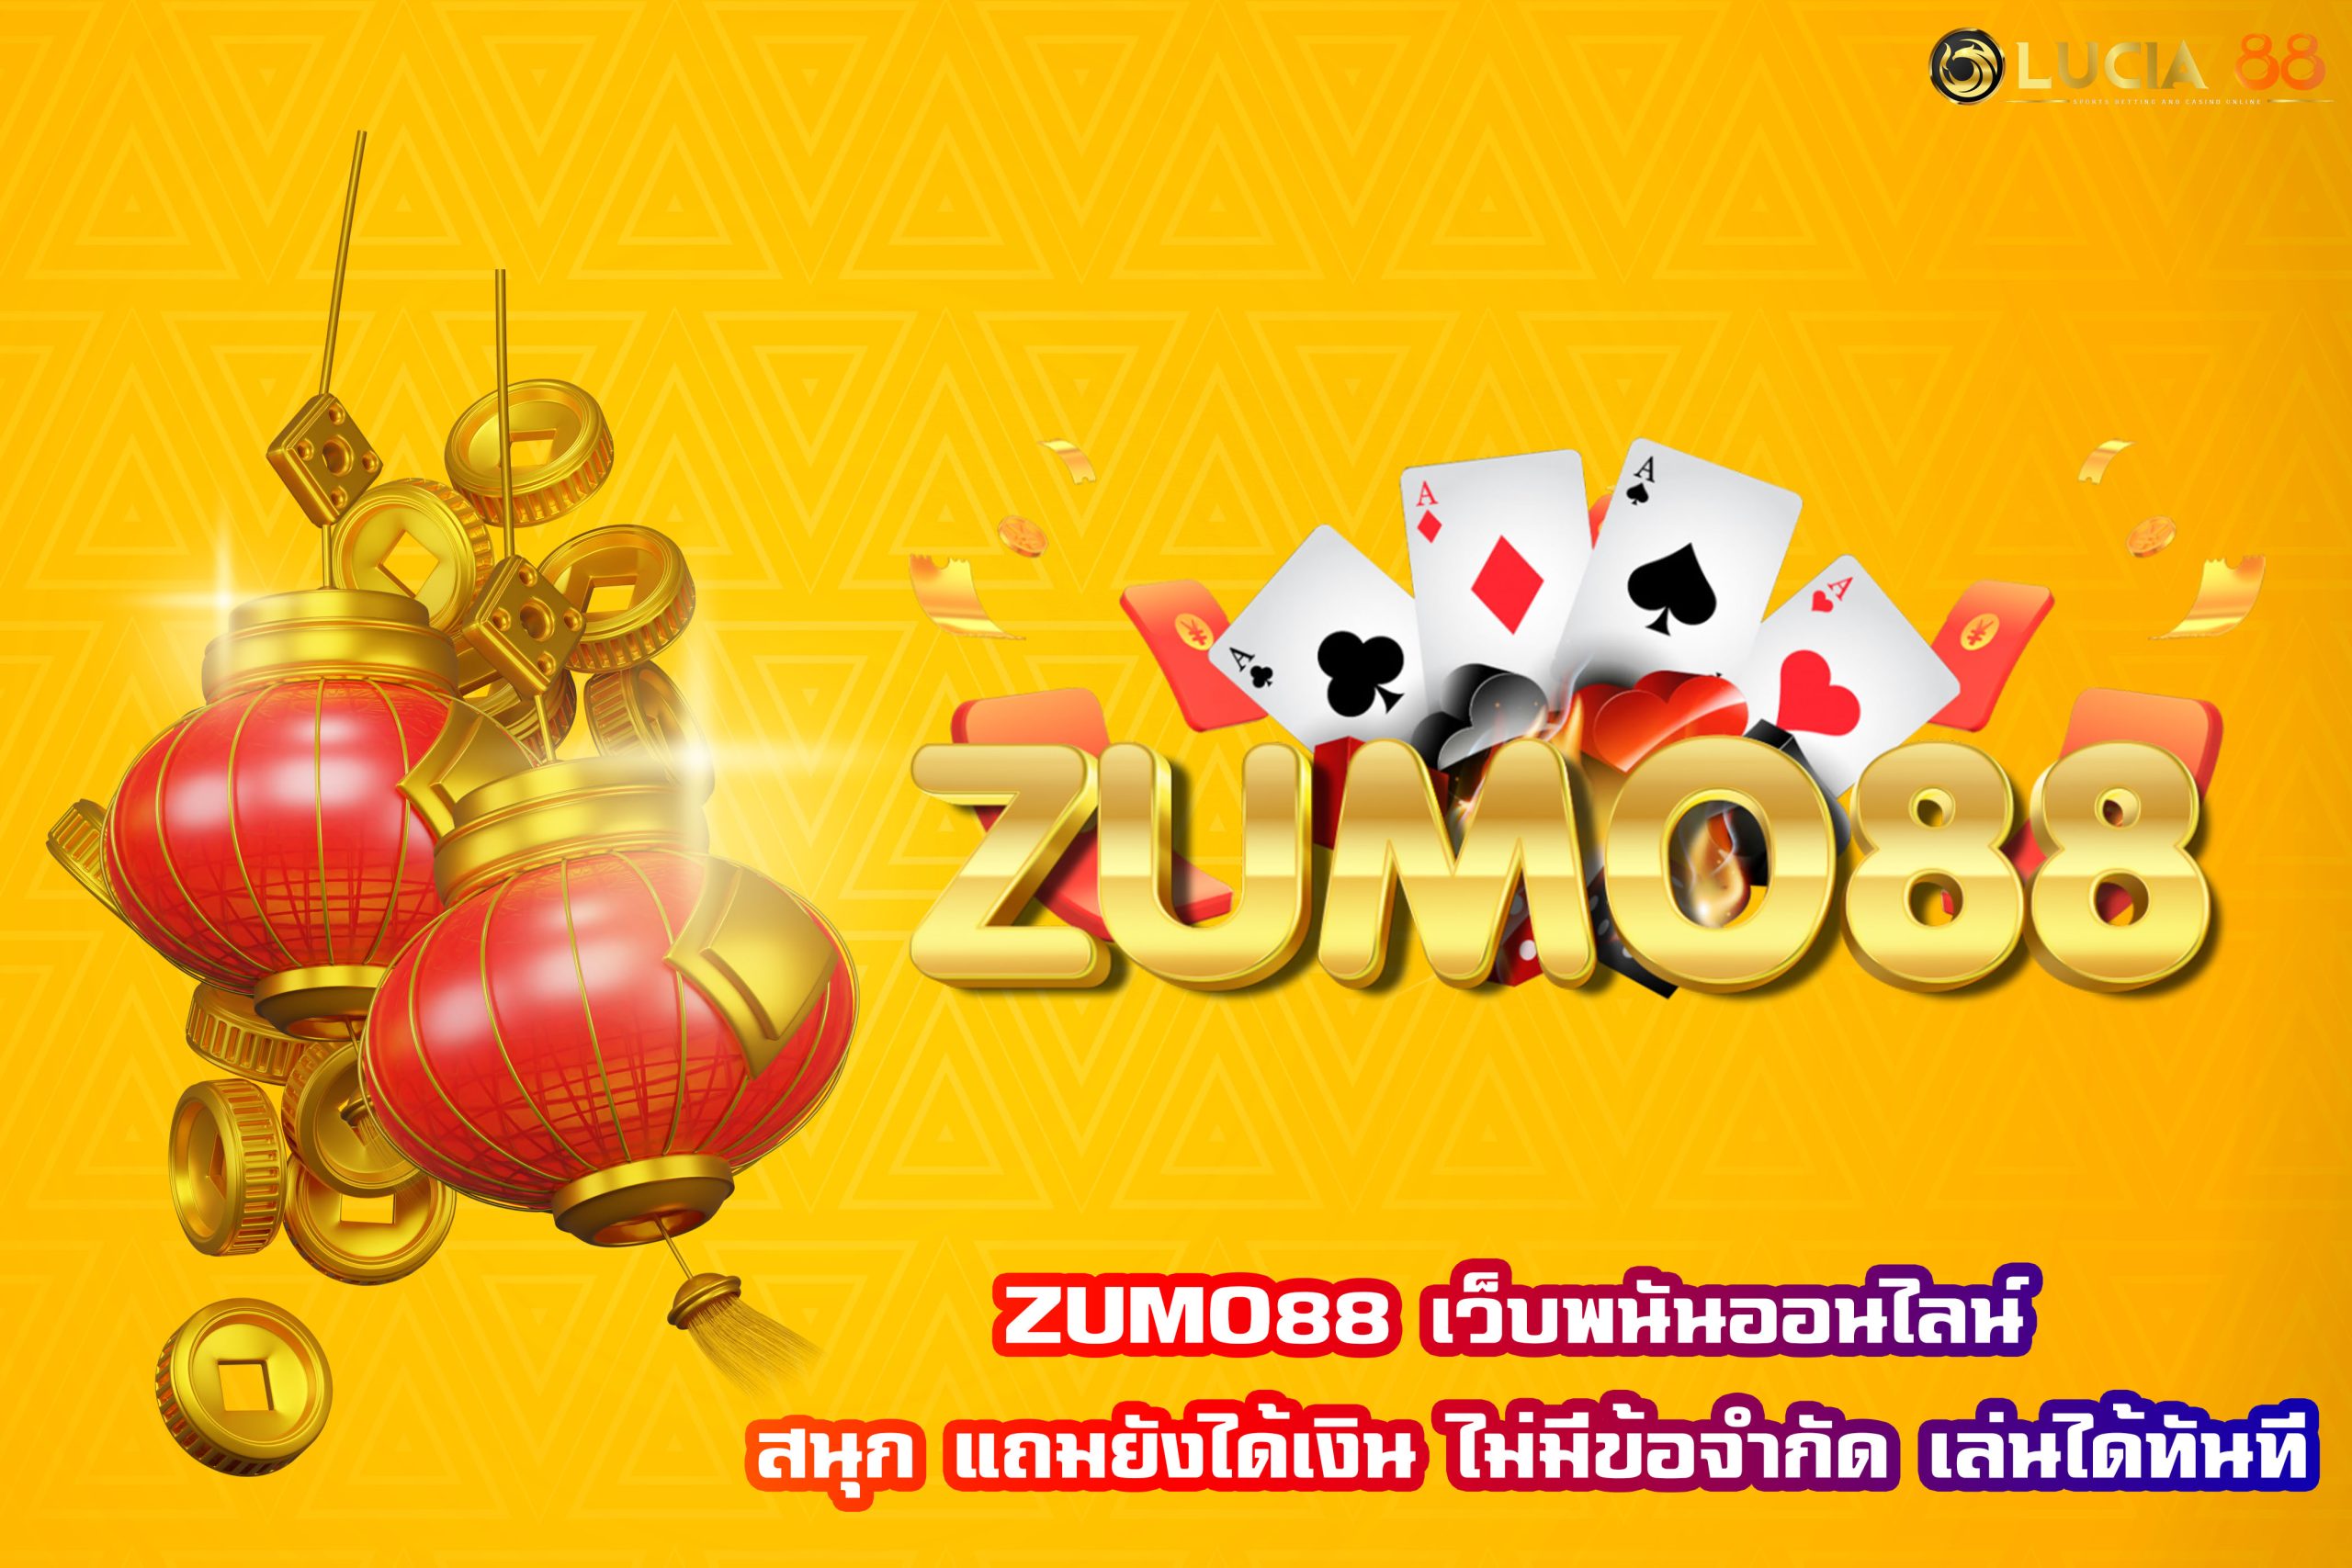 ZUMO88 เว็บพนันออนไลน์ สนุก แถมยังได้เงิน ไม่มีข้อจำกัด เล่นได้ทันที